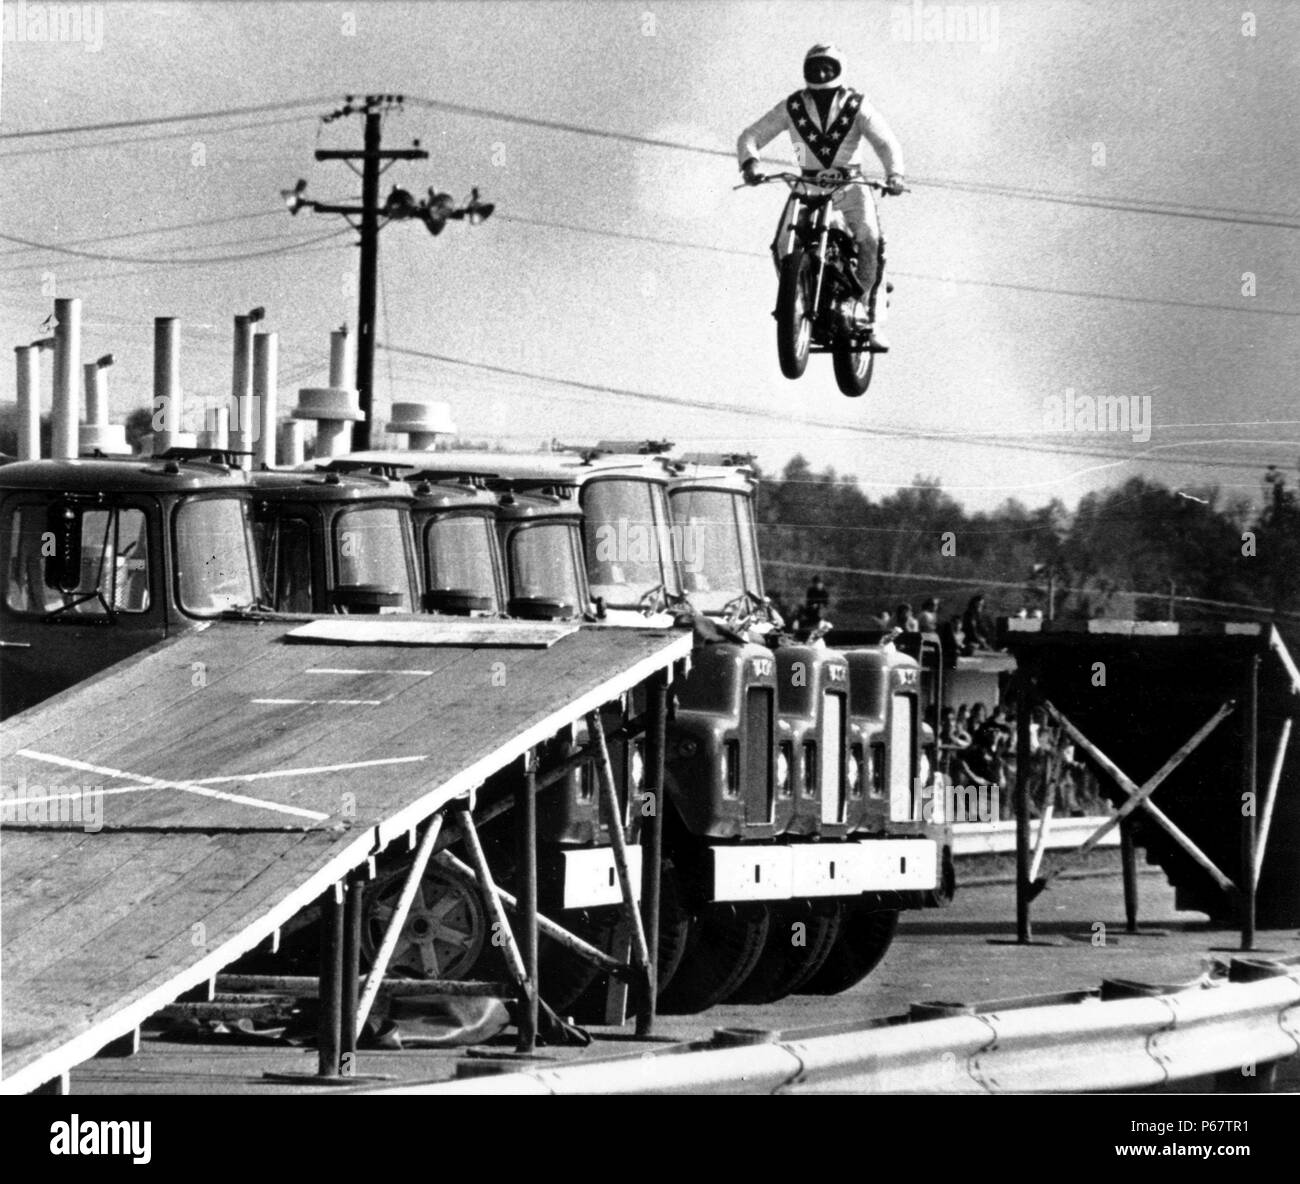 Evel Knievel était un daredevil, peintre, artiste du spectacle, et l'icône internationale. Dans sa carrière il a essayé plus de 75 rampe à rampe sauts moto entre 1965 et 1980, et en 1974, un échec de sauter à travers le canyon de la rivière Snake dans le Skycycle X-2, une fusée à vapeur. Le plus de 433 os brisés il a souffert au cours de sa carrière lui a valu une entrée dans le Livre Guinness des Records comme le survivant de la plupart des os cassé dans une vie" Banque D'Images